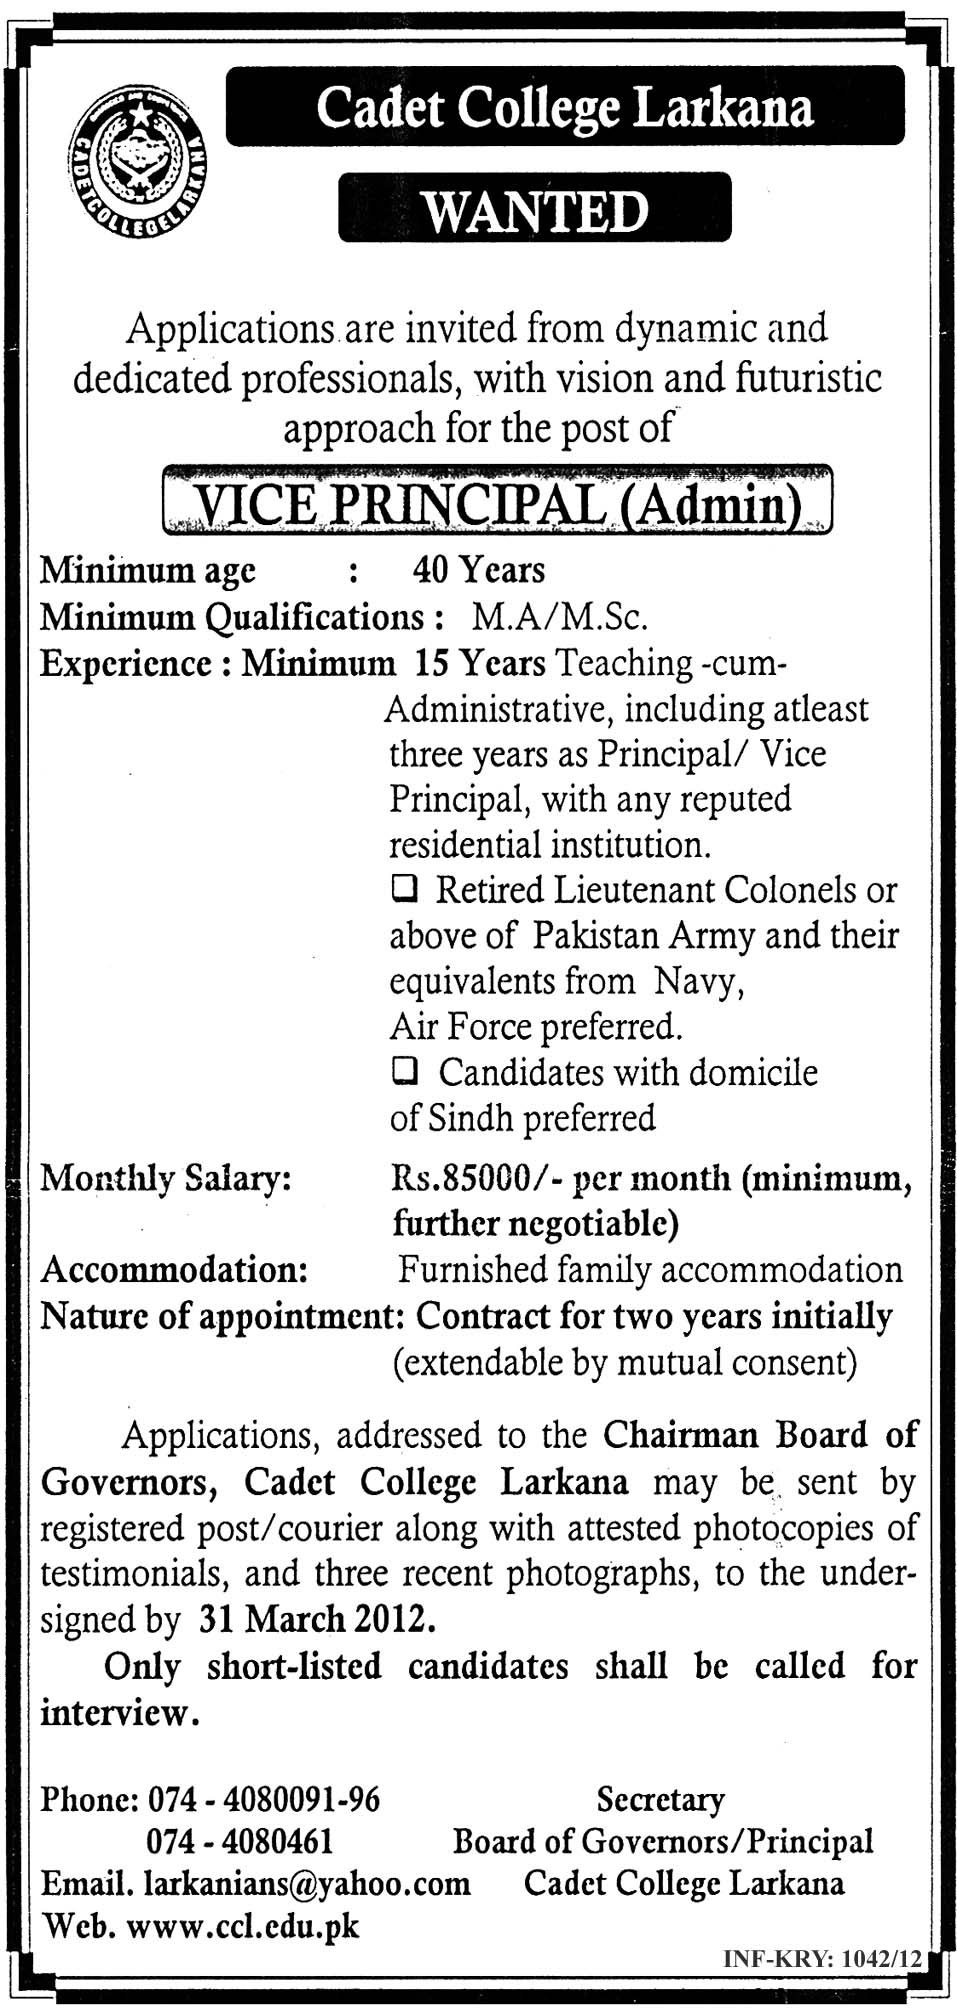 Cadet College Larkana (Govt Jobs) Requires Vice Principal (Admin)